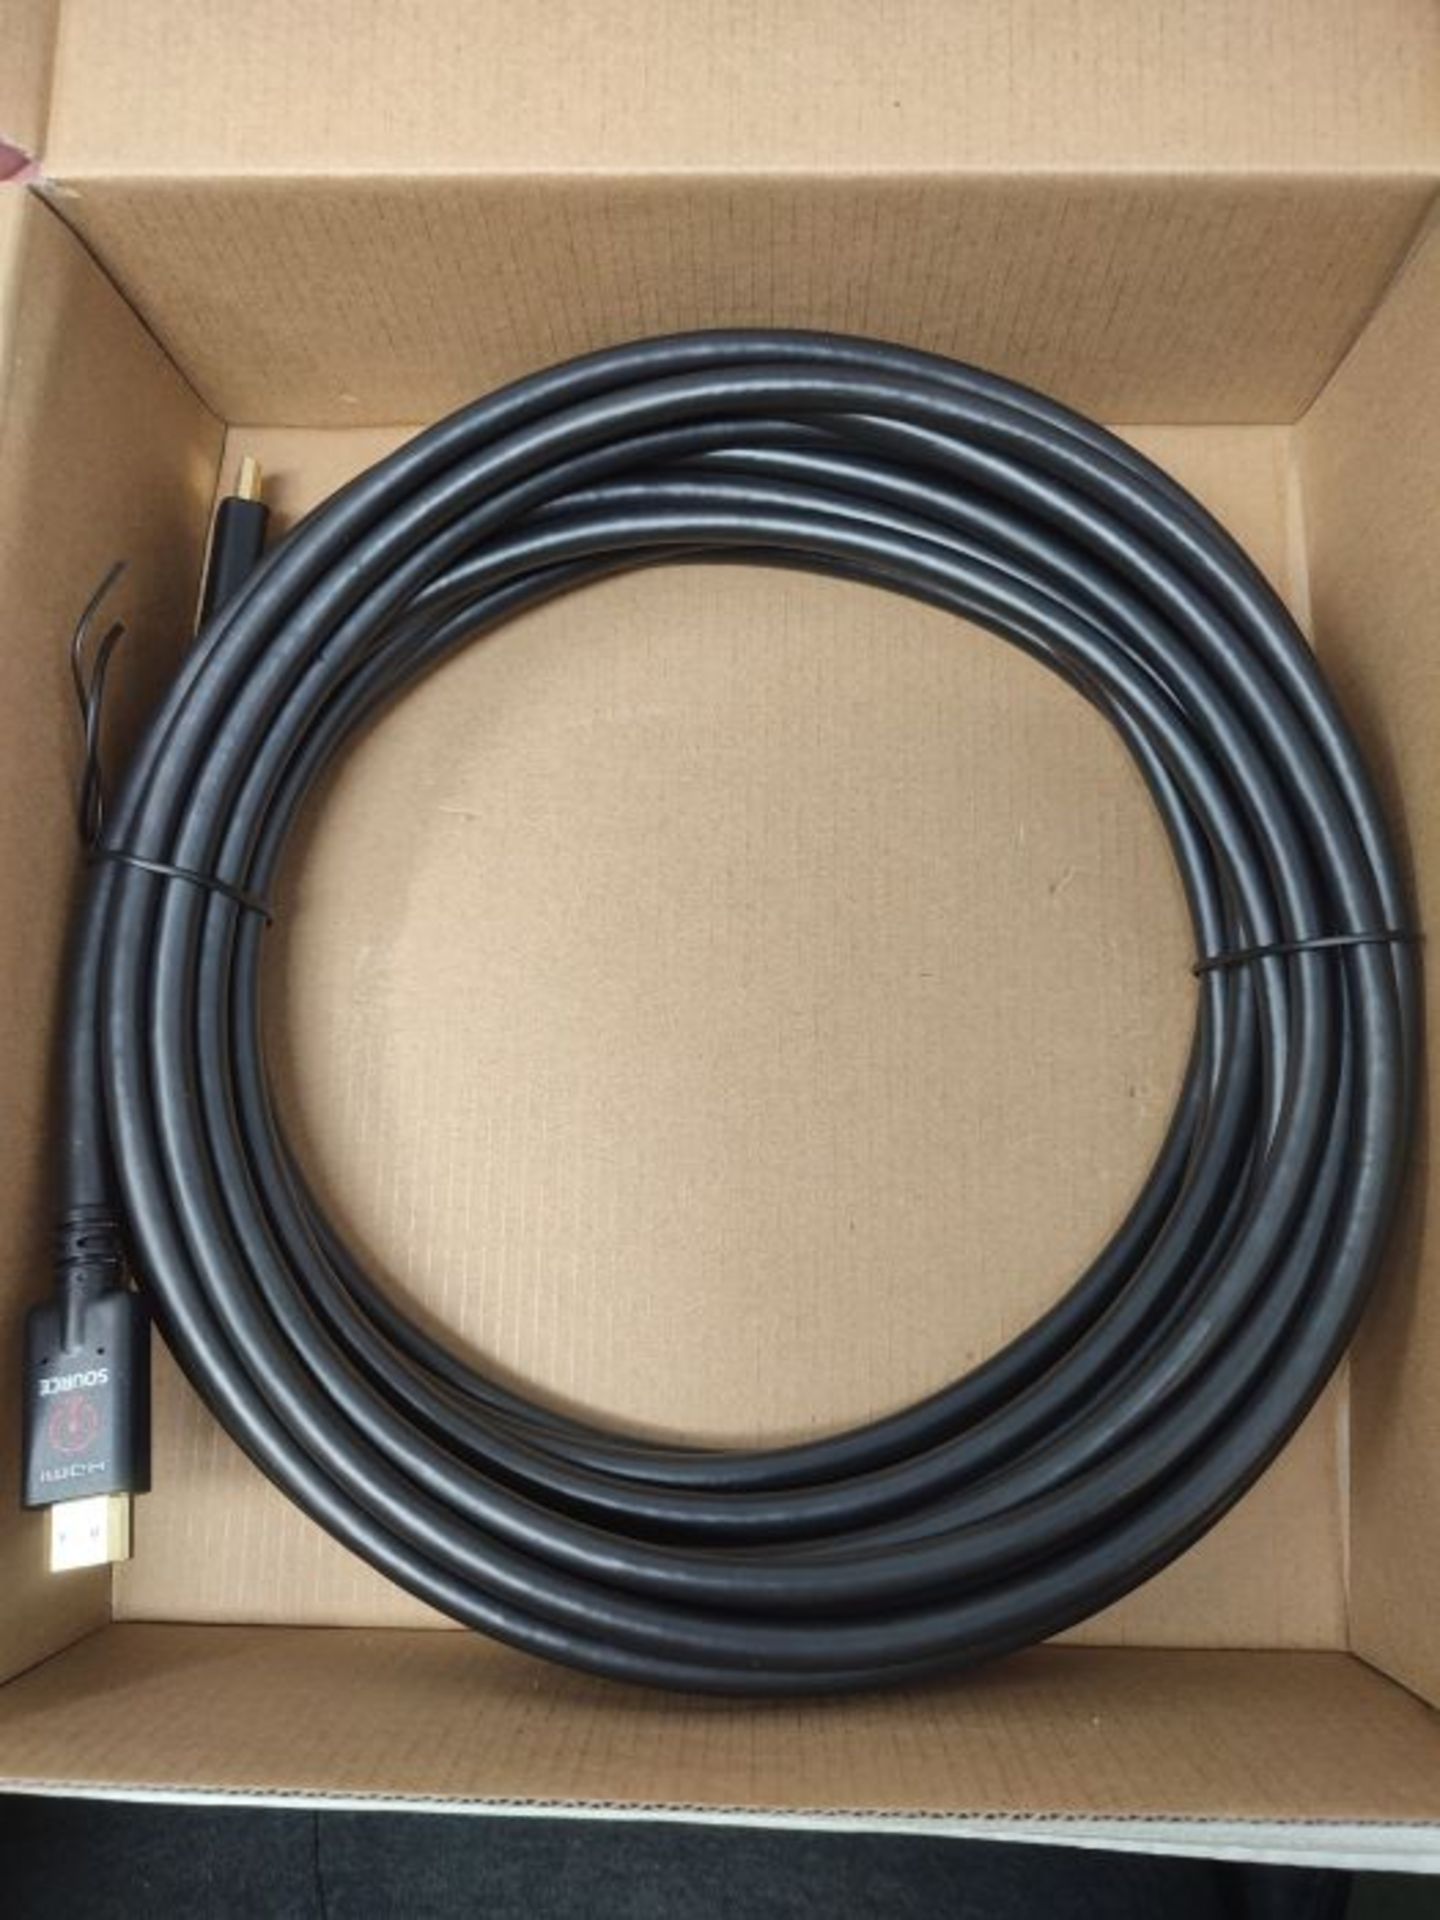 Amazon Basics HDMI-Kabel mit nicht-bidirektionalem 10.7 m RedMere-Kabel - Image 2 of 3